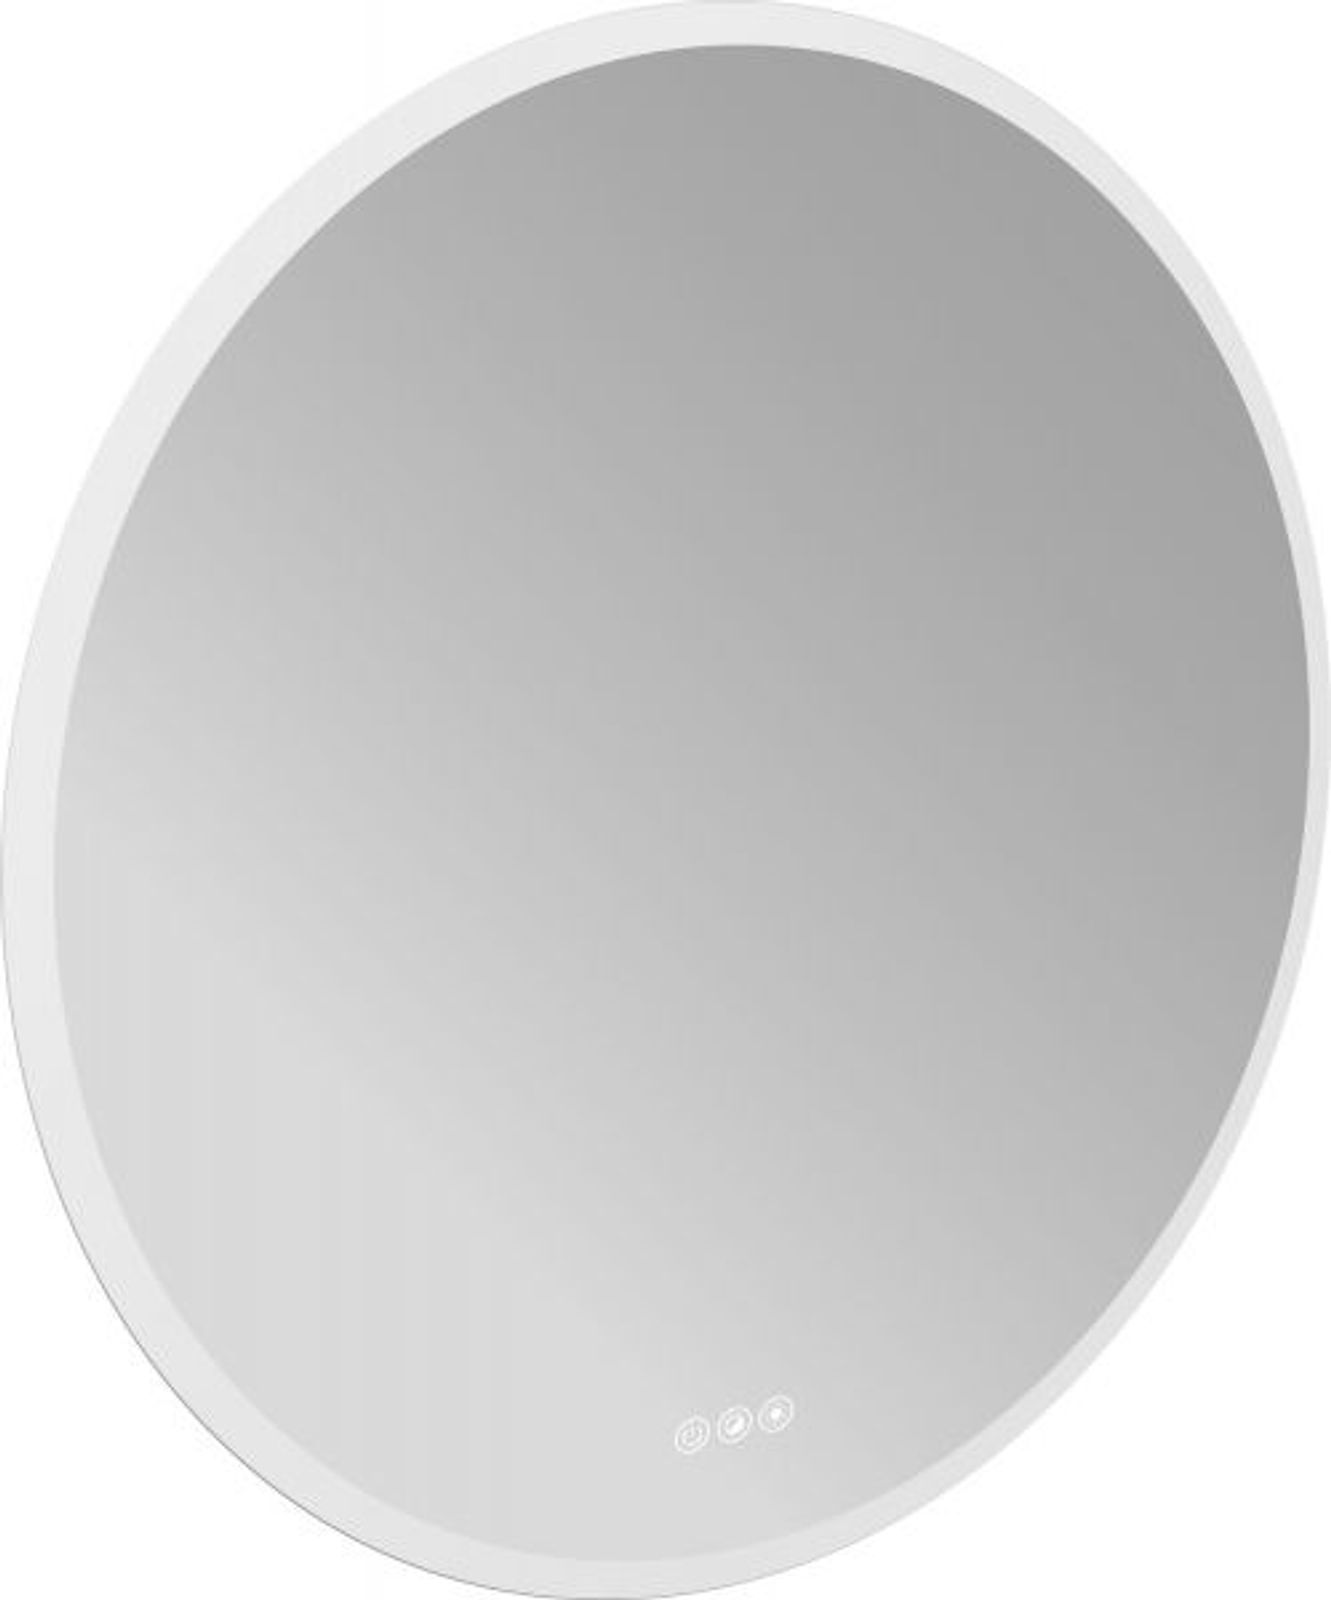 Emco Bad Lichtspiegel pure++ 30808 mit 3 Touchsensoren 790mm